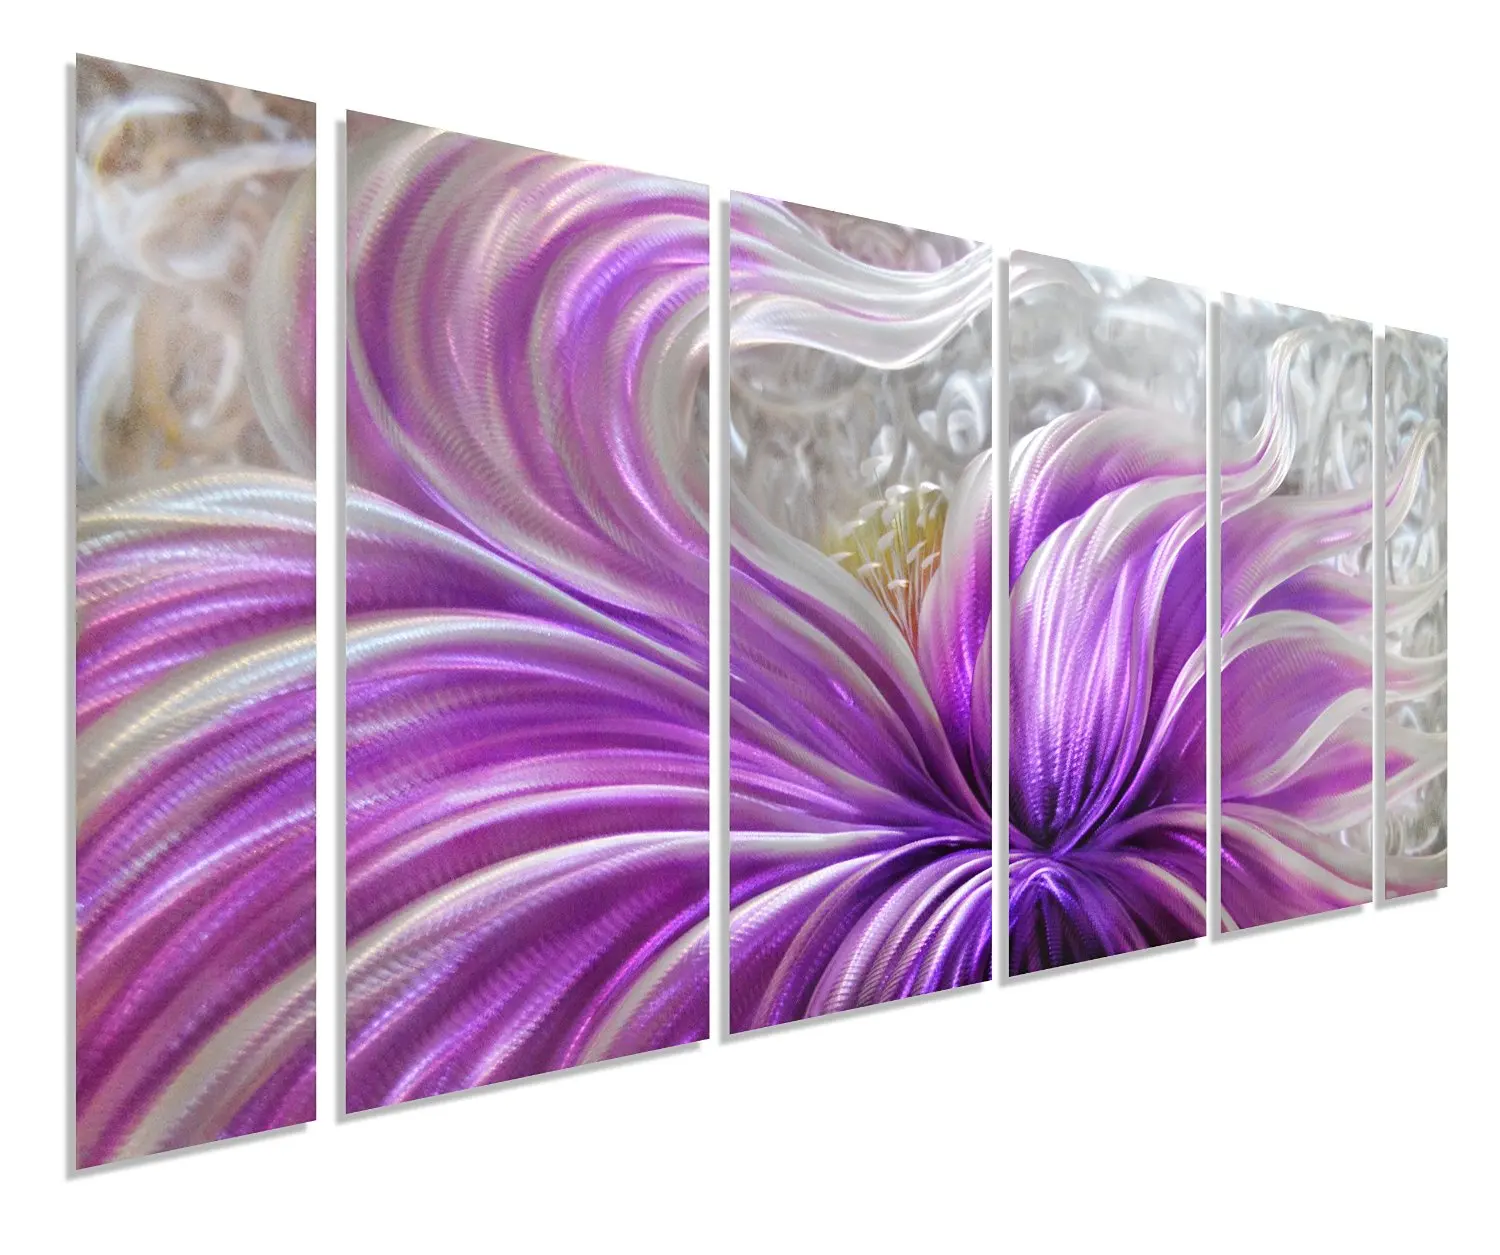 Cheap Metal Flower Wall Art Purple, find Metal Flower Wall Art Purple